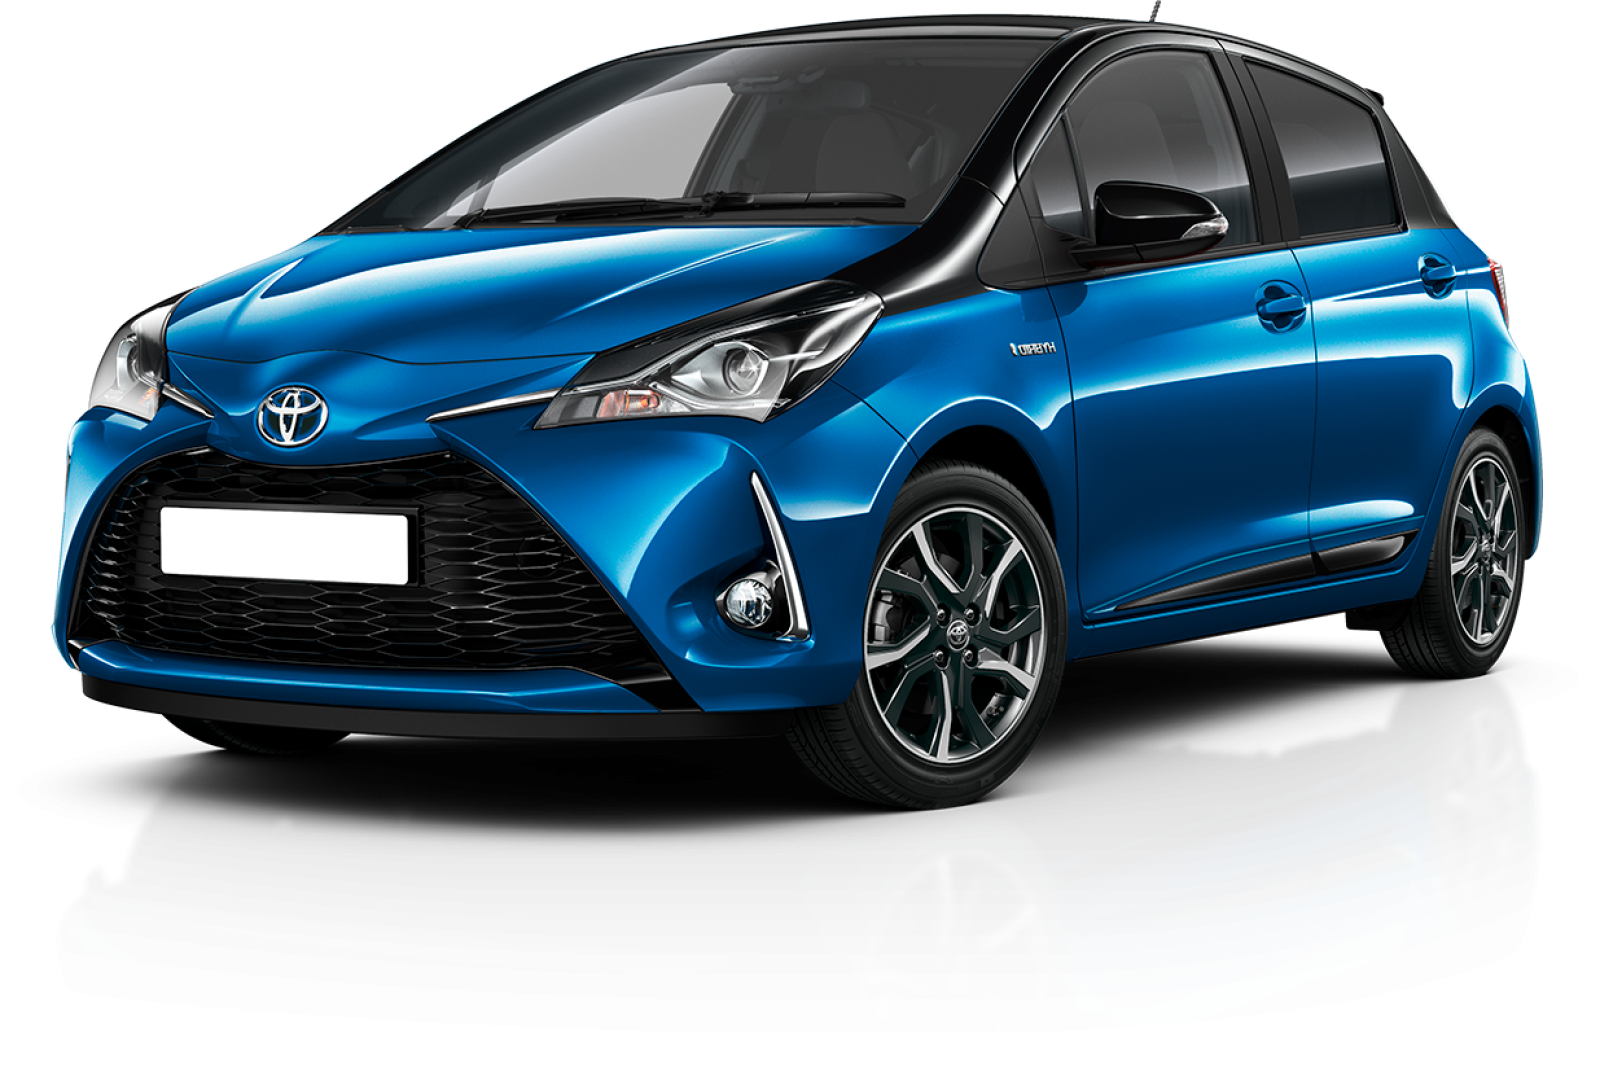 Toyota Yaris Hybrid 1.5. Toyota Yaris 2017. Toyota Yaris 1.5 Hybrid SP 2015. Toyota Vitz 2020. Yaris hybrid